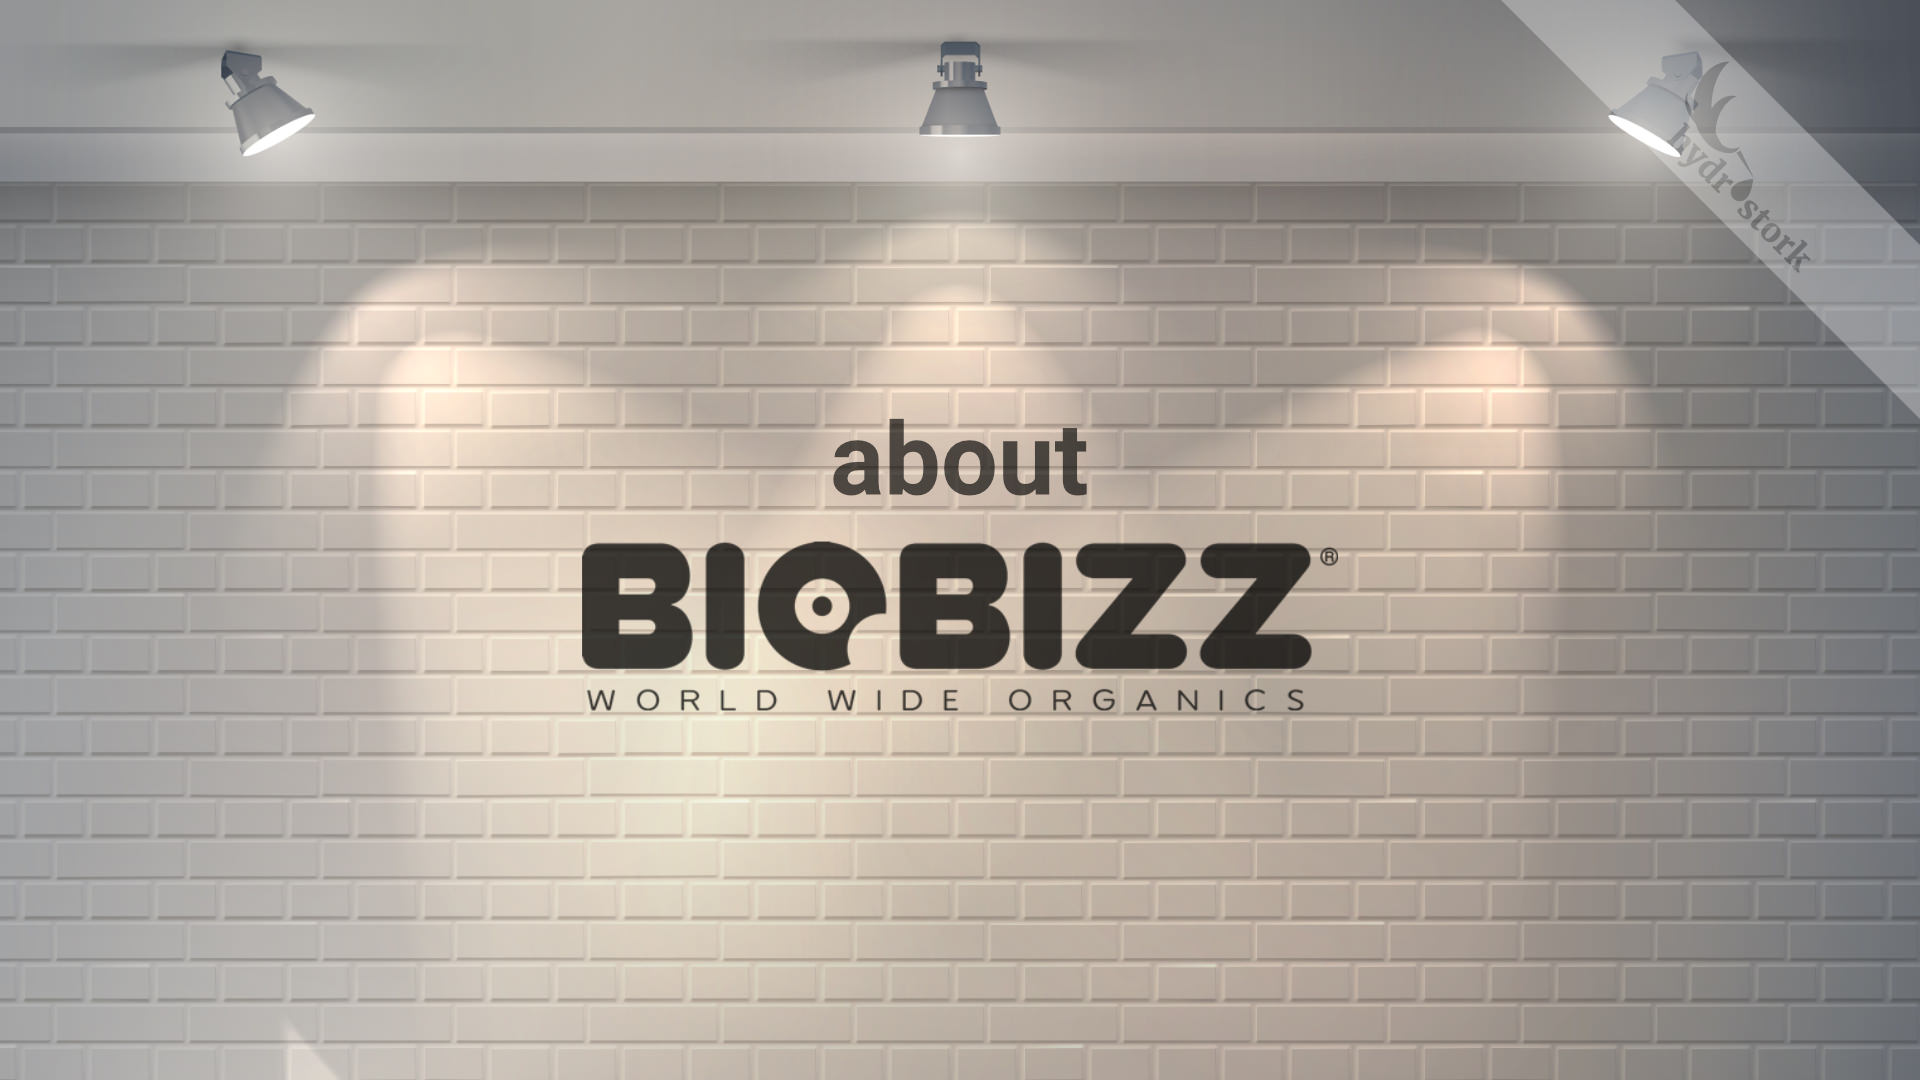 About Biobizz guide